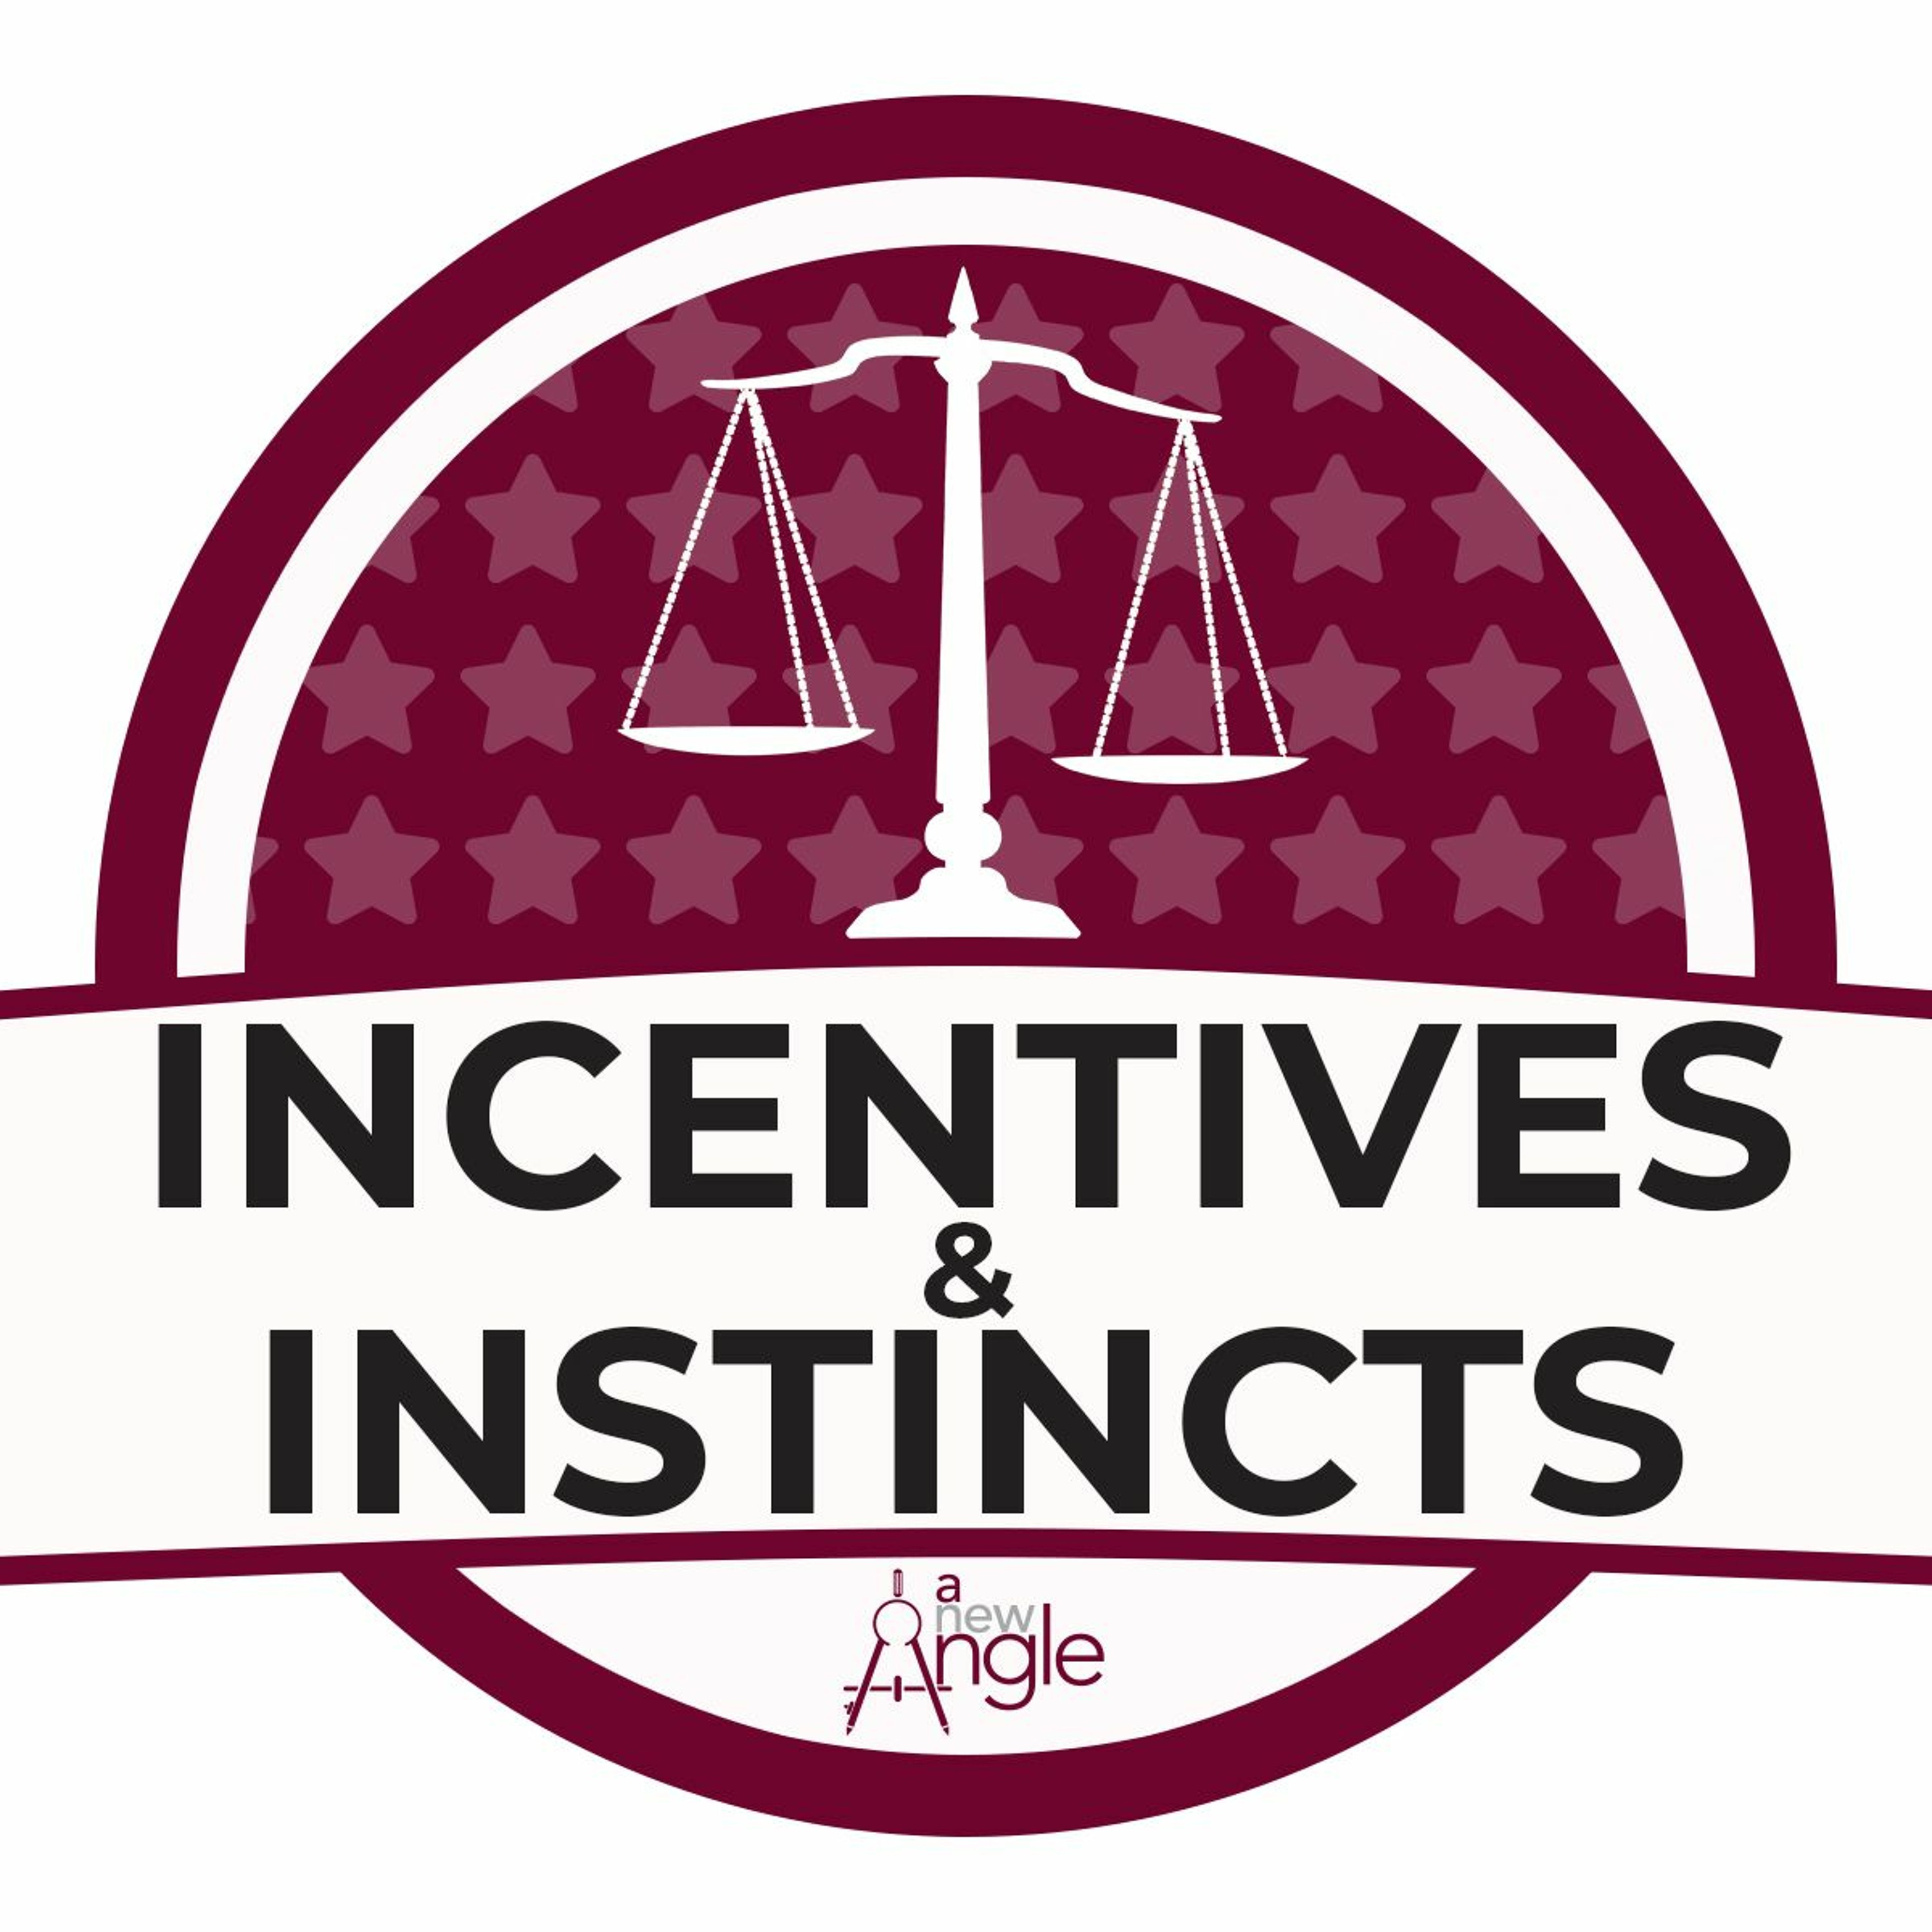 Incentives & Instincts returns!